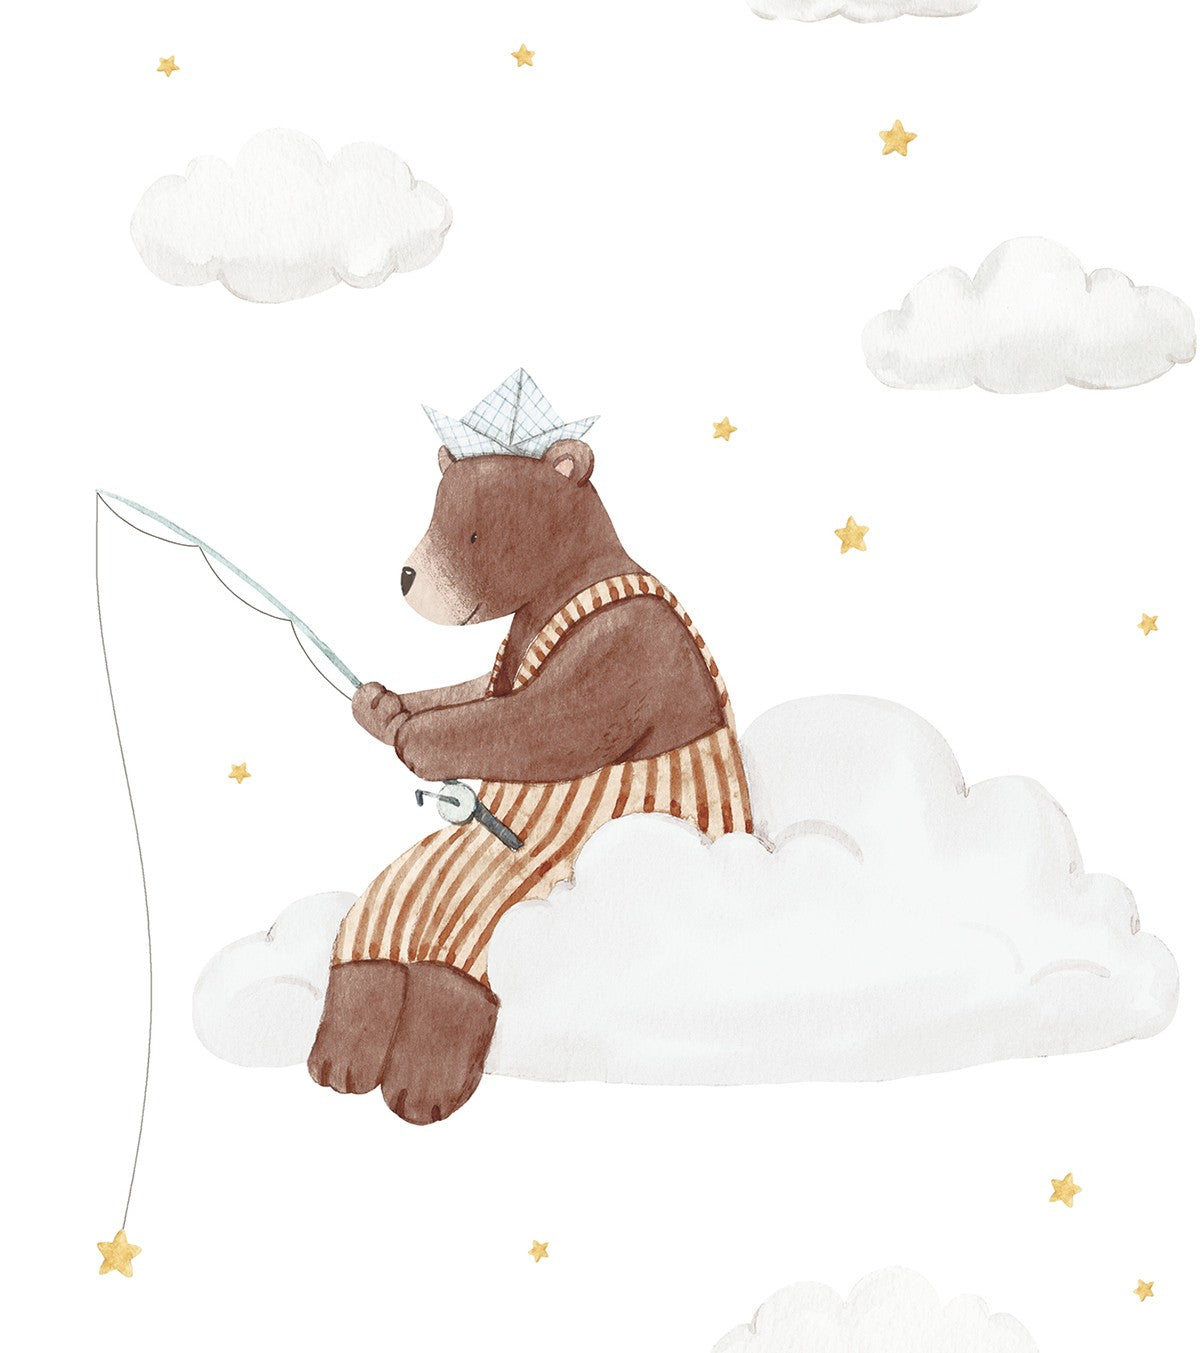 GENTLE FRIENDS - Set van 4 Posters - Konijn, beer, vos, luchtballonnen